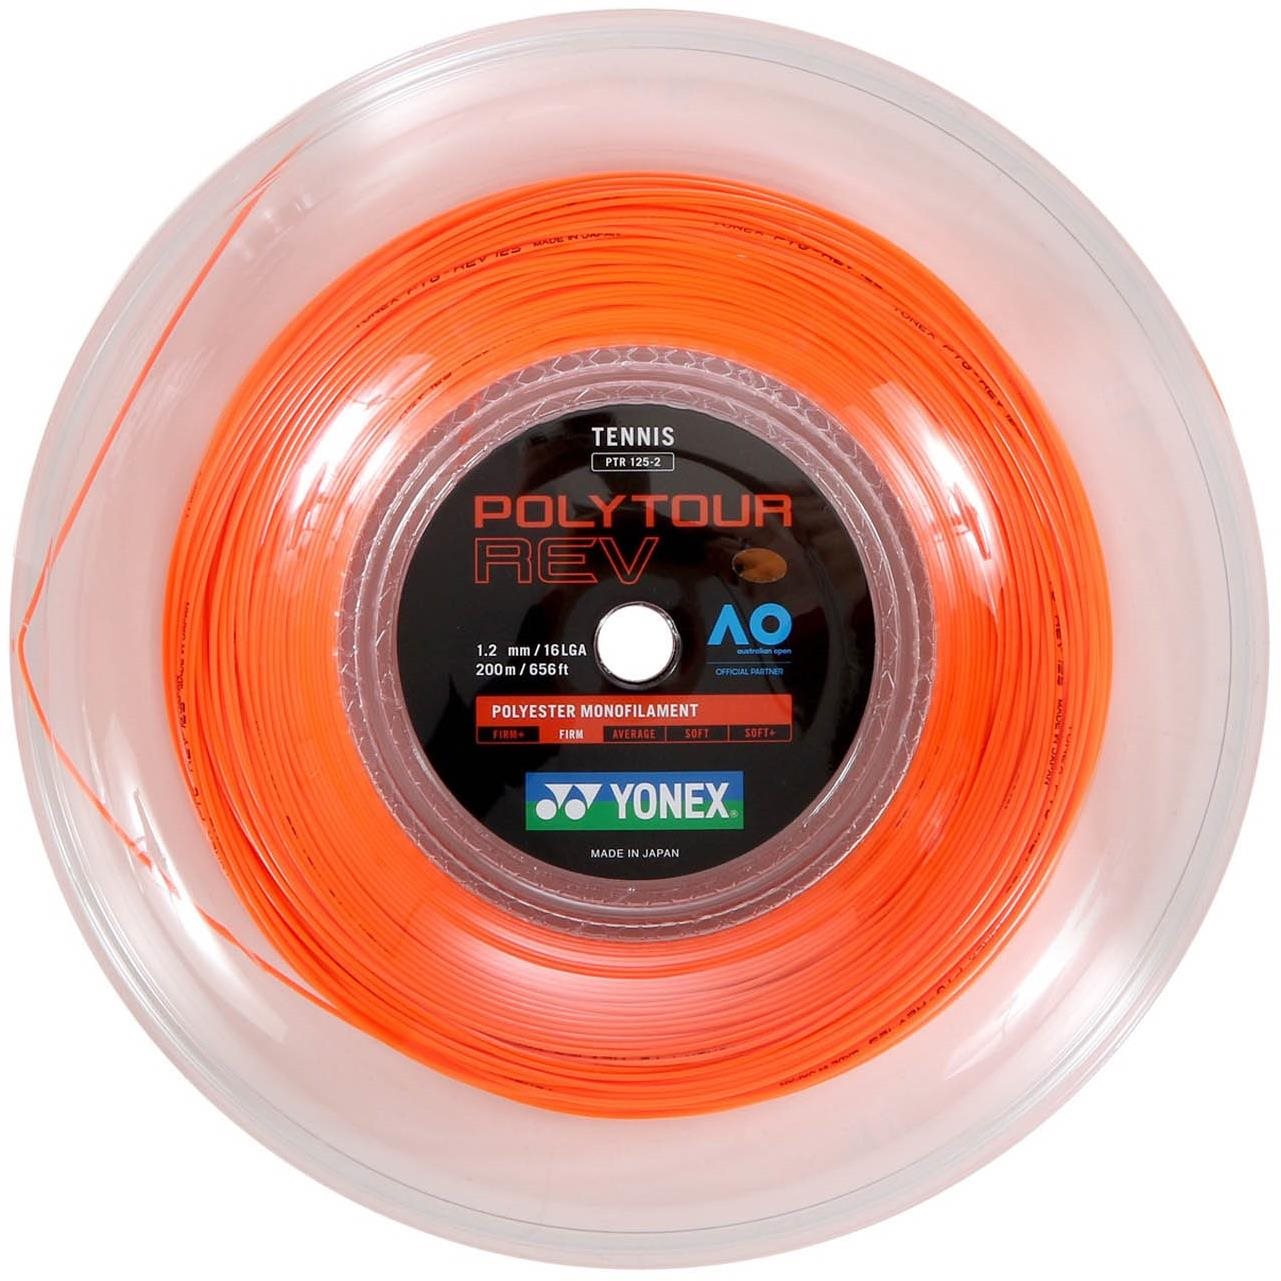 Yonex Poly Tour REV, 1,20mm, 200m, Bright Orange